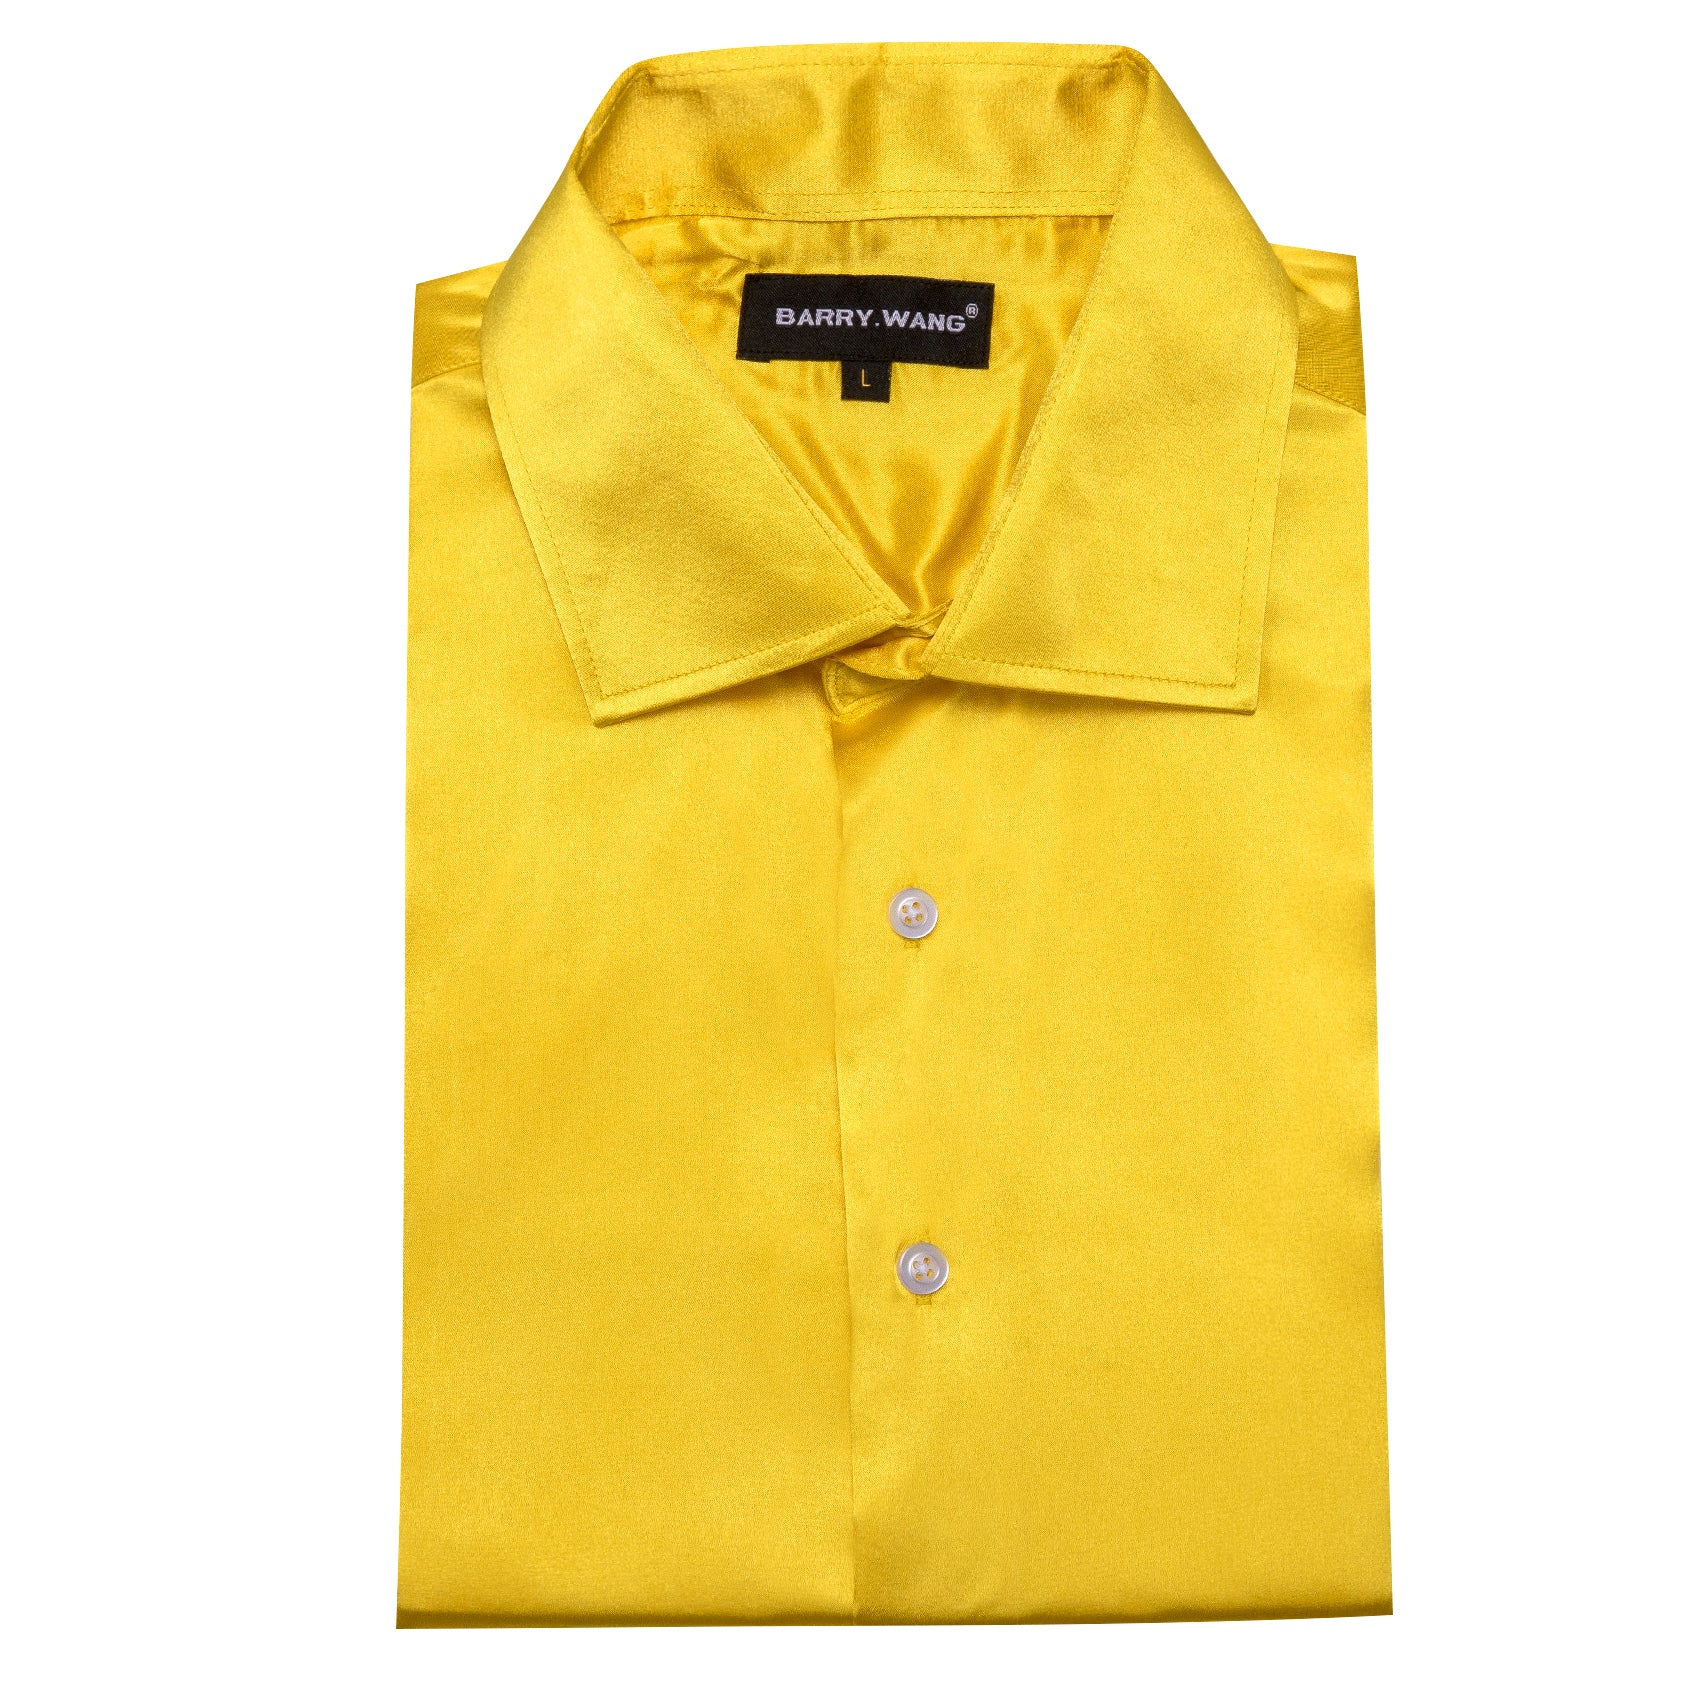 Barry.wang Men's Shirt Bright Yellow Solid Silk Long Sleeve Shirt Business